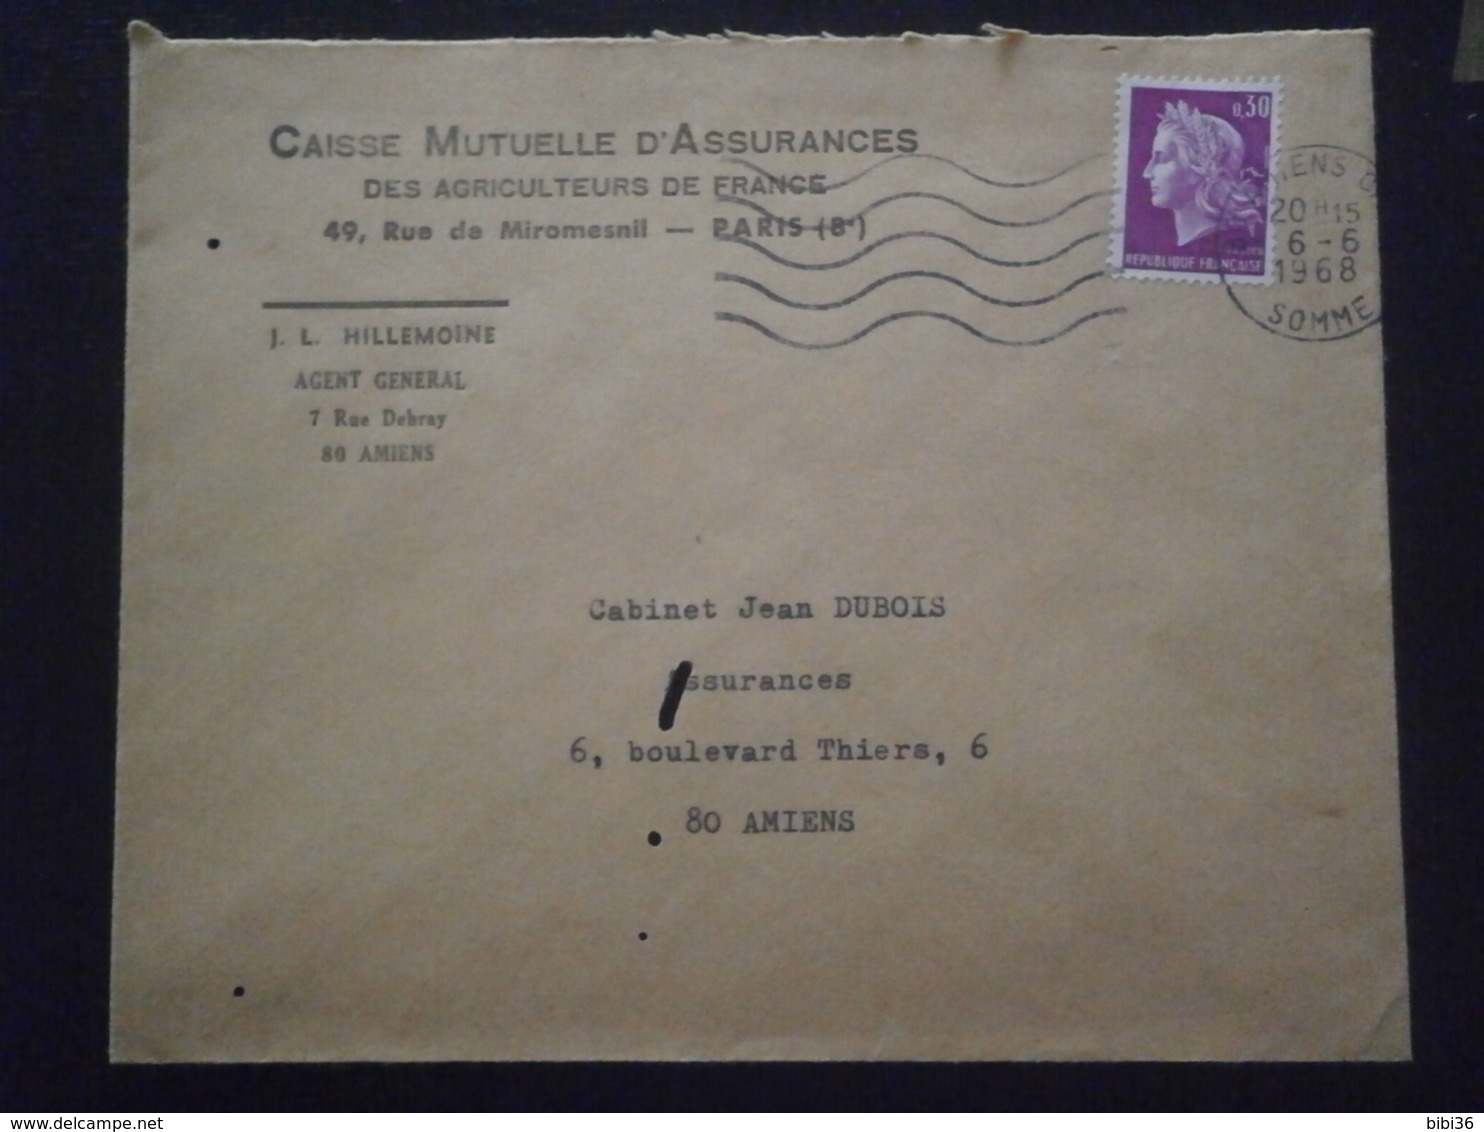 FRANCE MARIANNE CHEFFER 1536 ENVELOPPE LETTRE LETTER COVER PLI GREVE GREVES POSTALE EVENEMENT 1968 AMIENS SOMME - Documenti